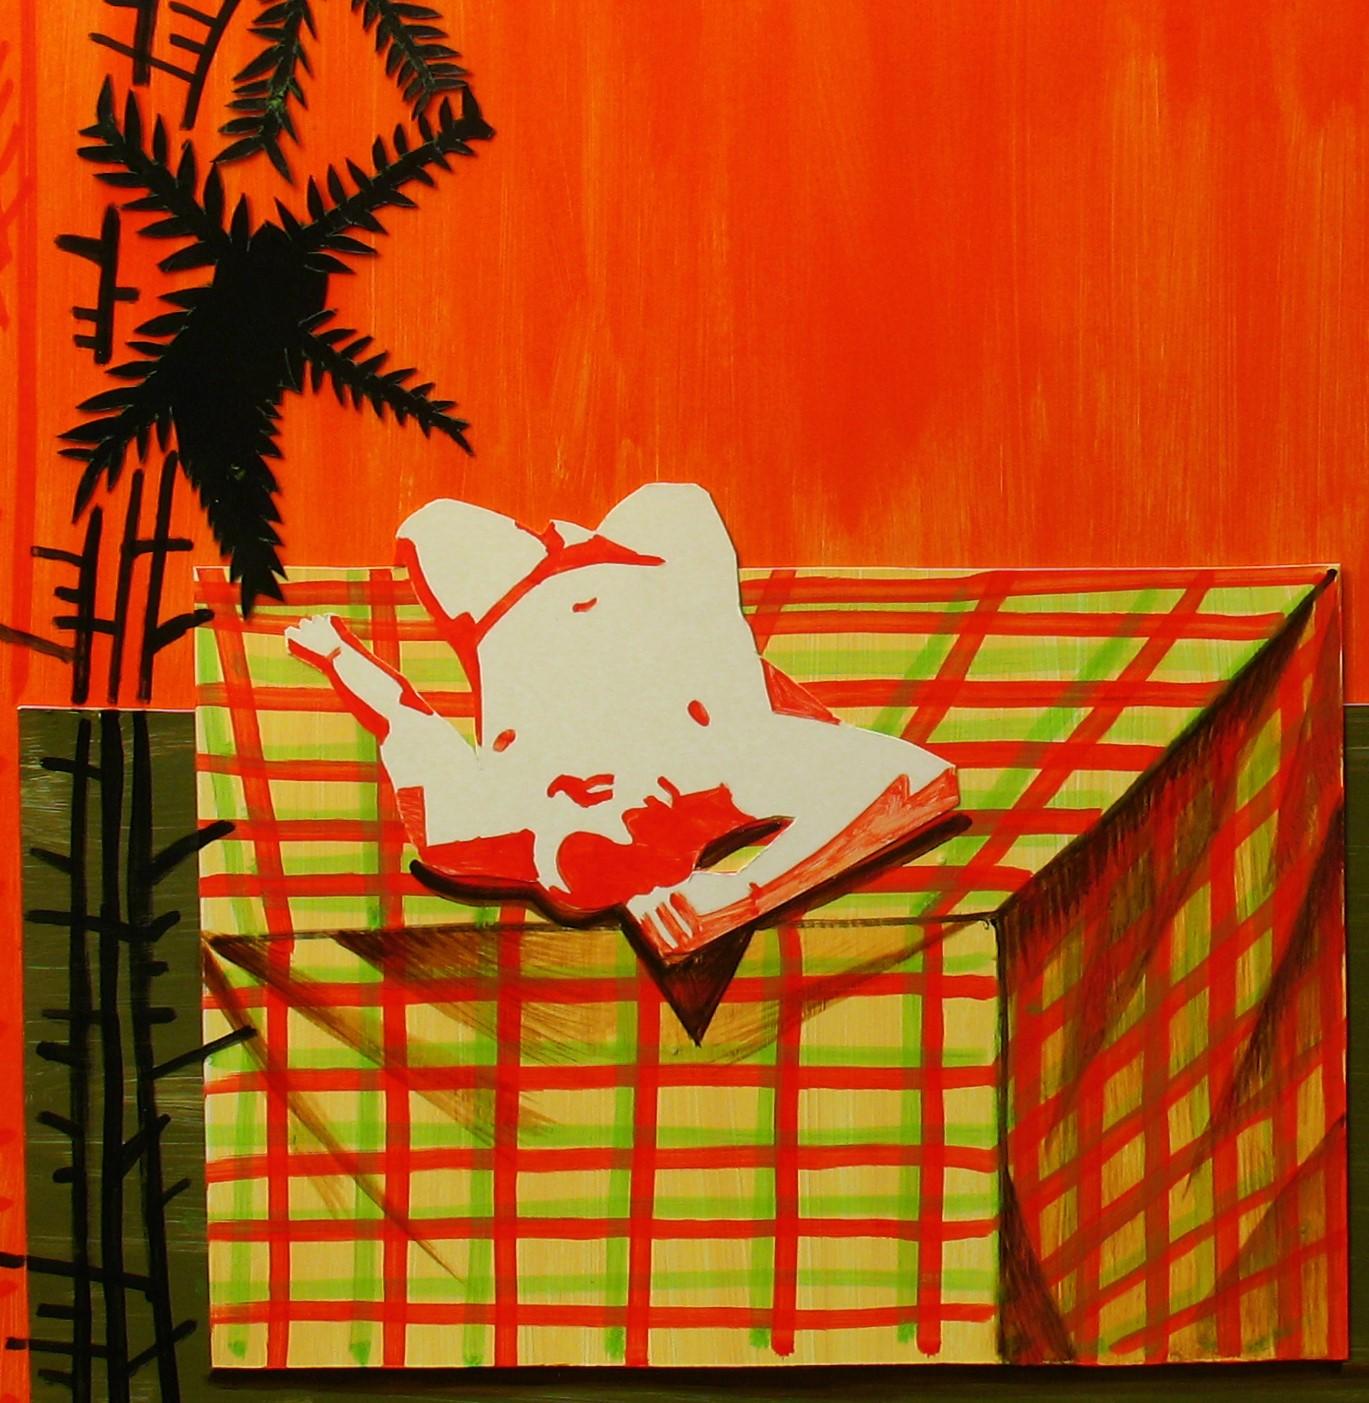 Nachmittag, 2015
Collage auf Karton
27 9/16 H x 39 3/8 W in.
70 H x 100 B cm

Auf einem orangefarbenen Hintergrund liegt ein nackter Mann auf dem Bett. In einer sehr entspannten und strahlenden Atmosphäre schlafen die Männer oder halten sich einfach